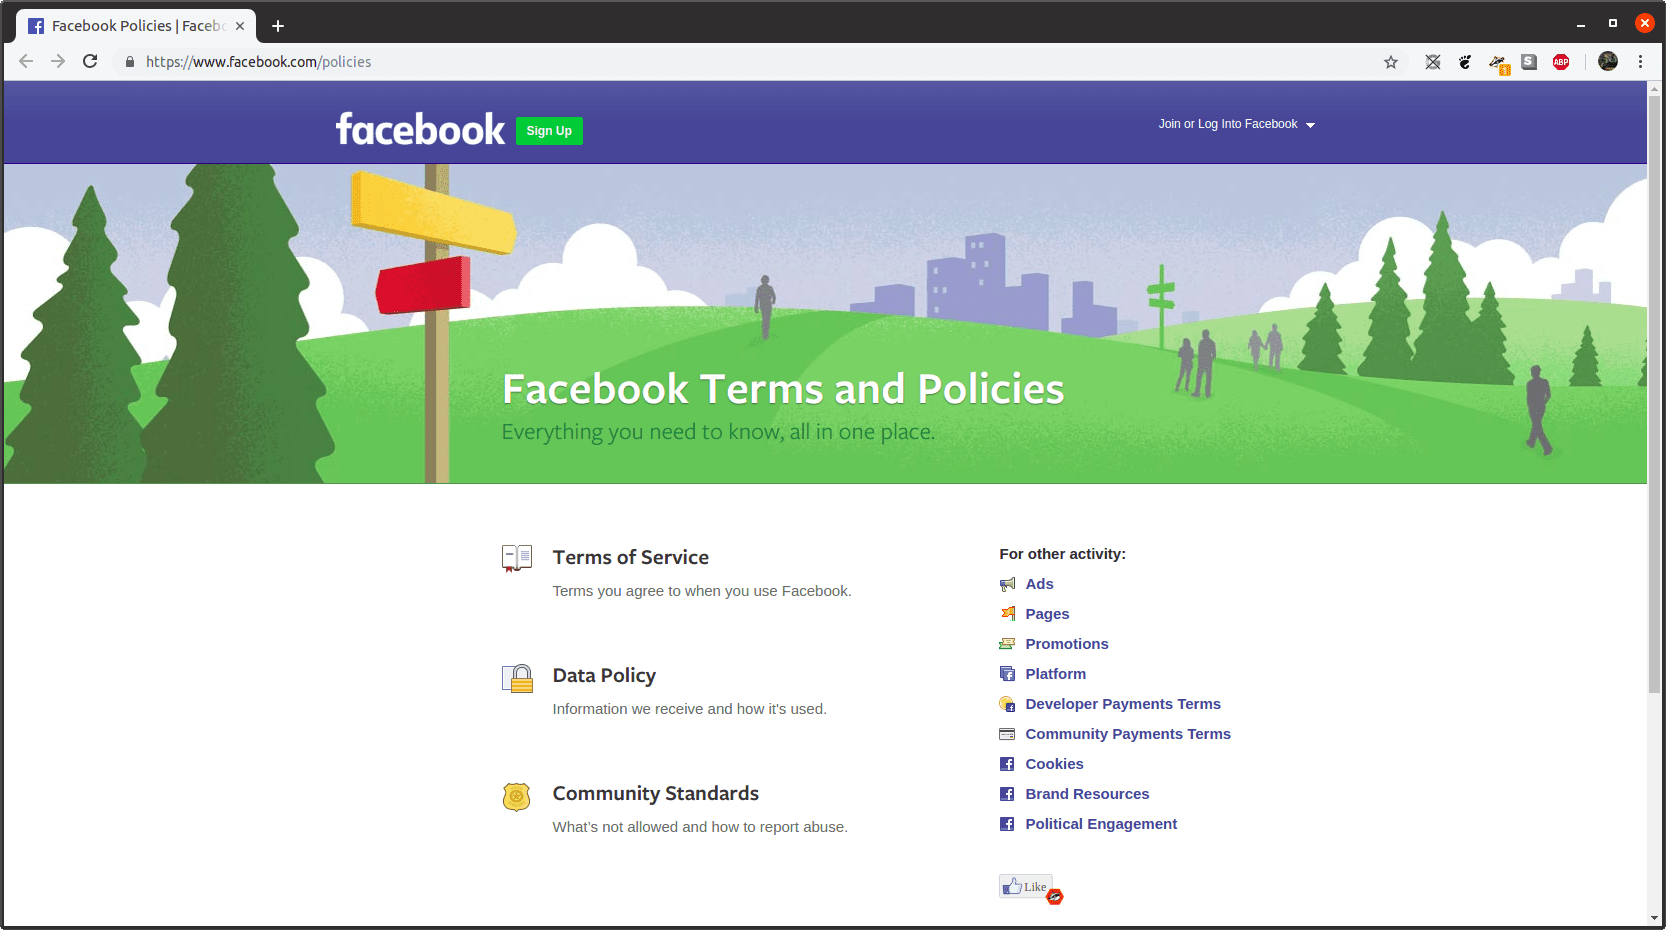 De webpagina met voorwaarden en beleid van Facebook